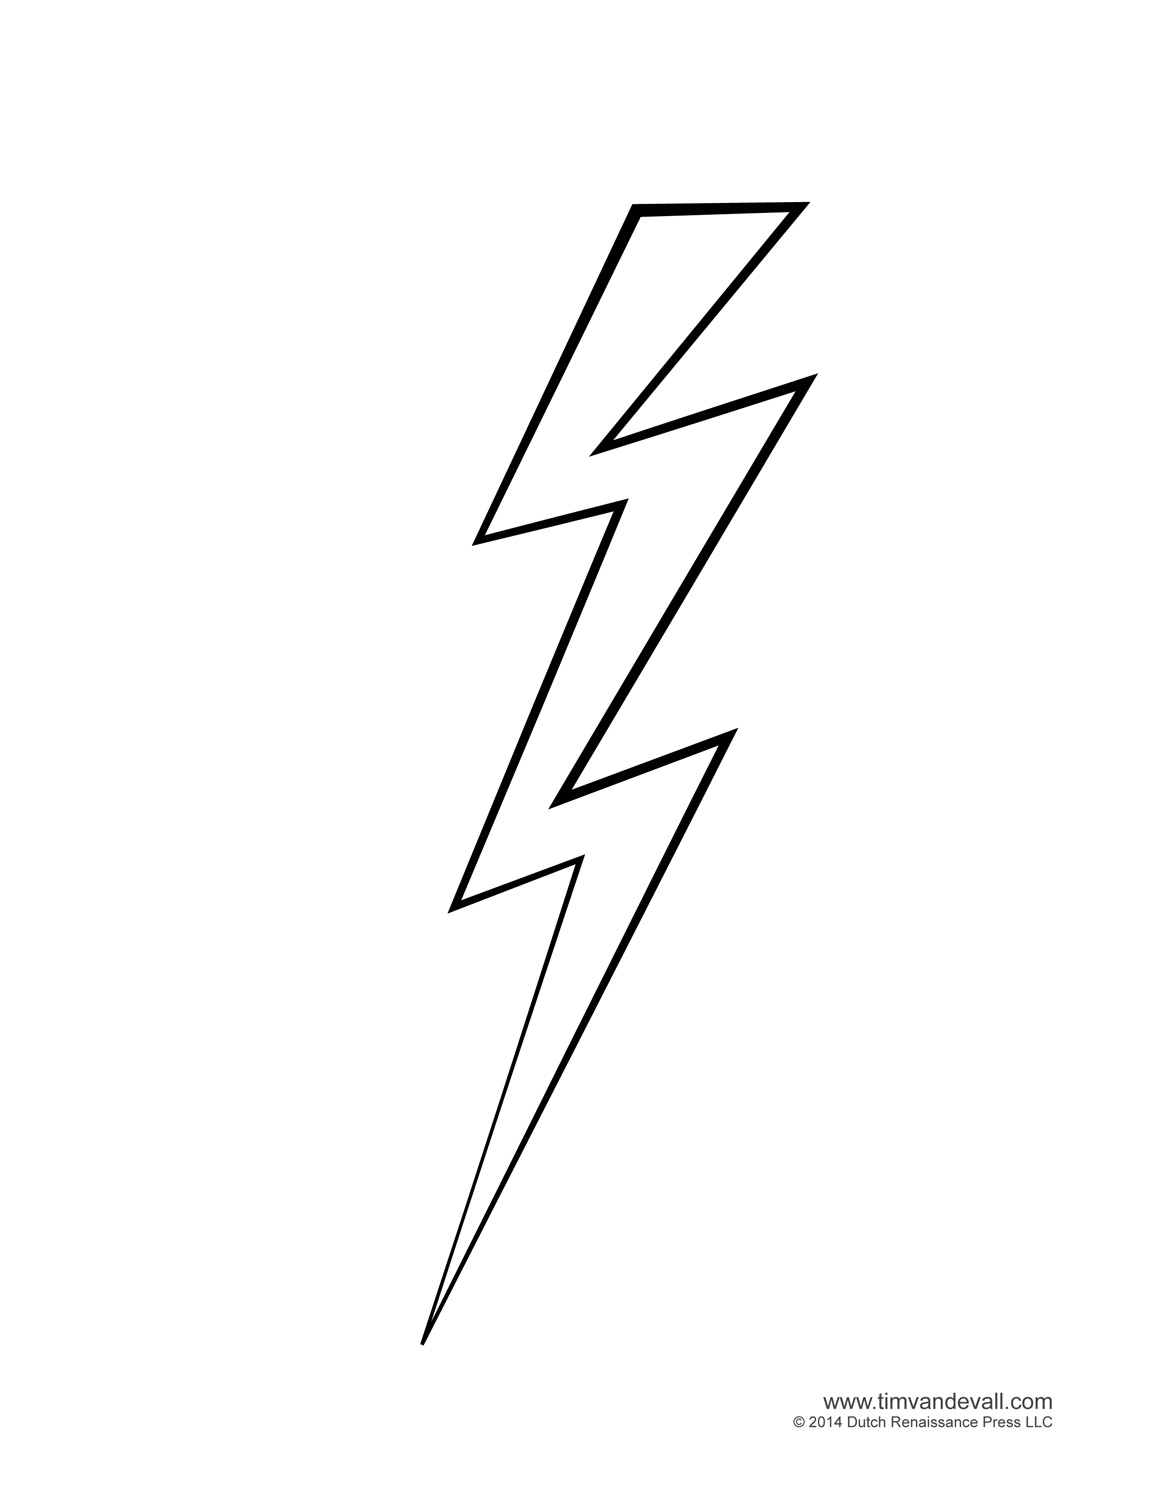 White lightning bolt clip art vector free clipart image